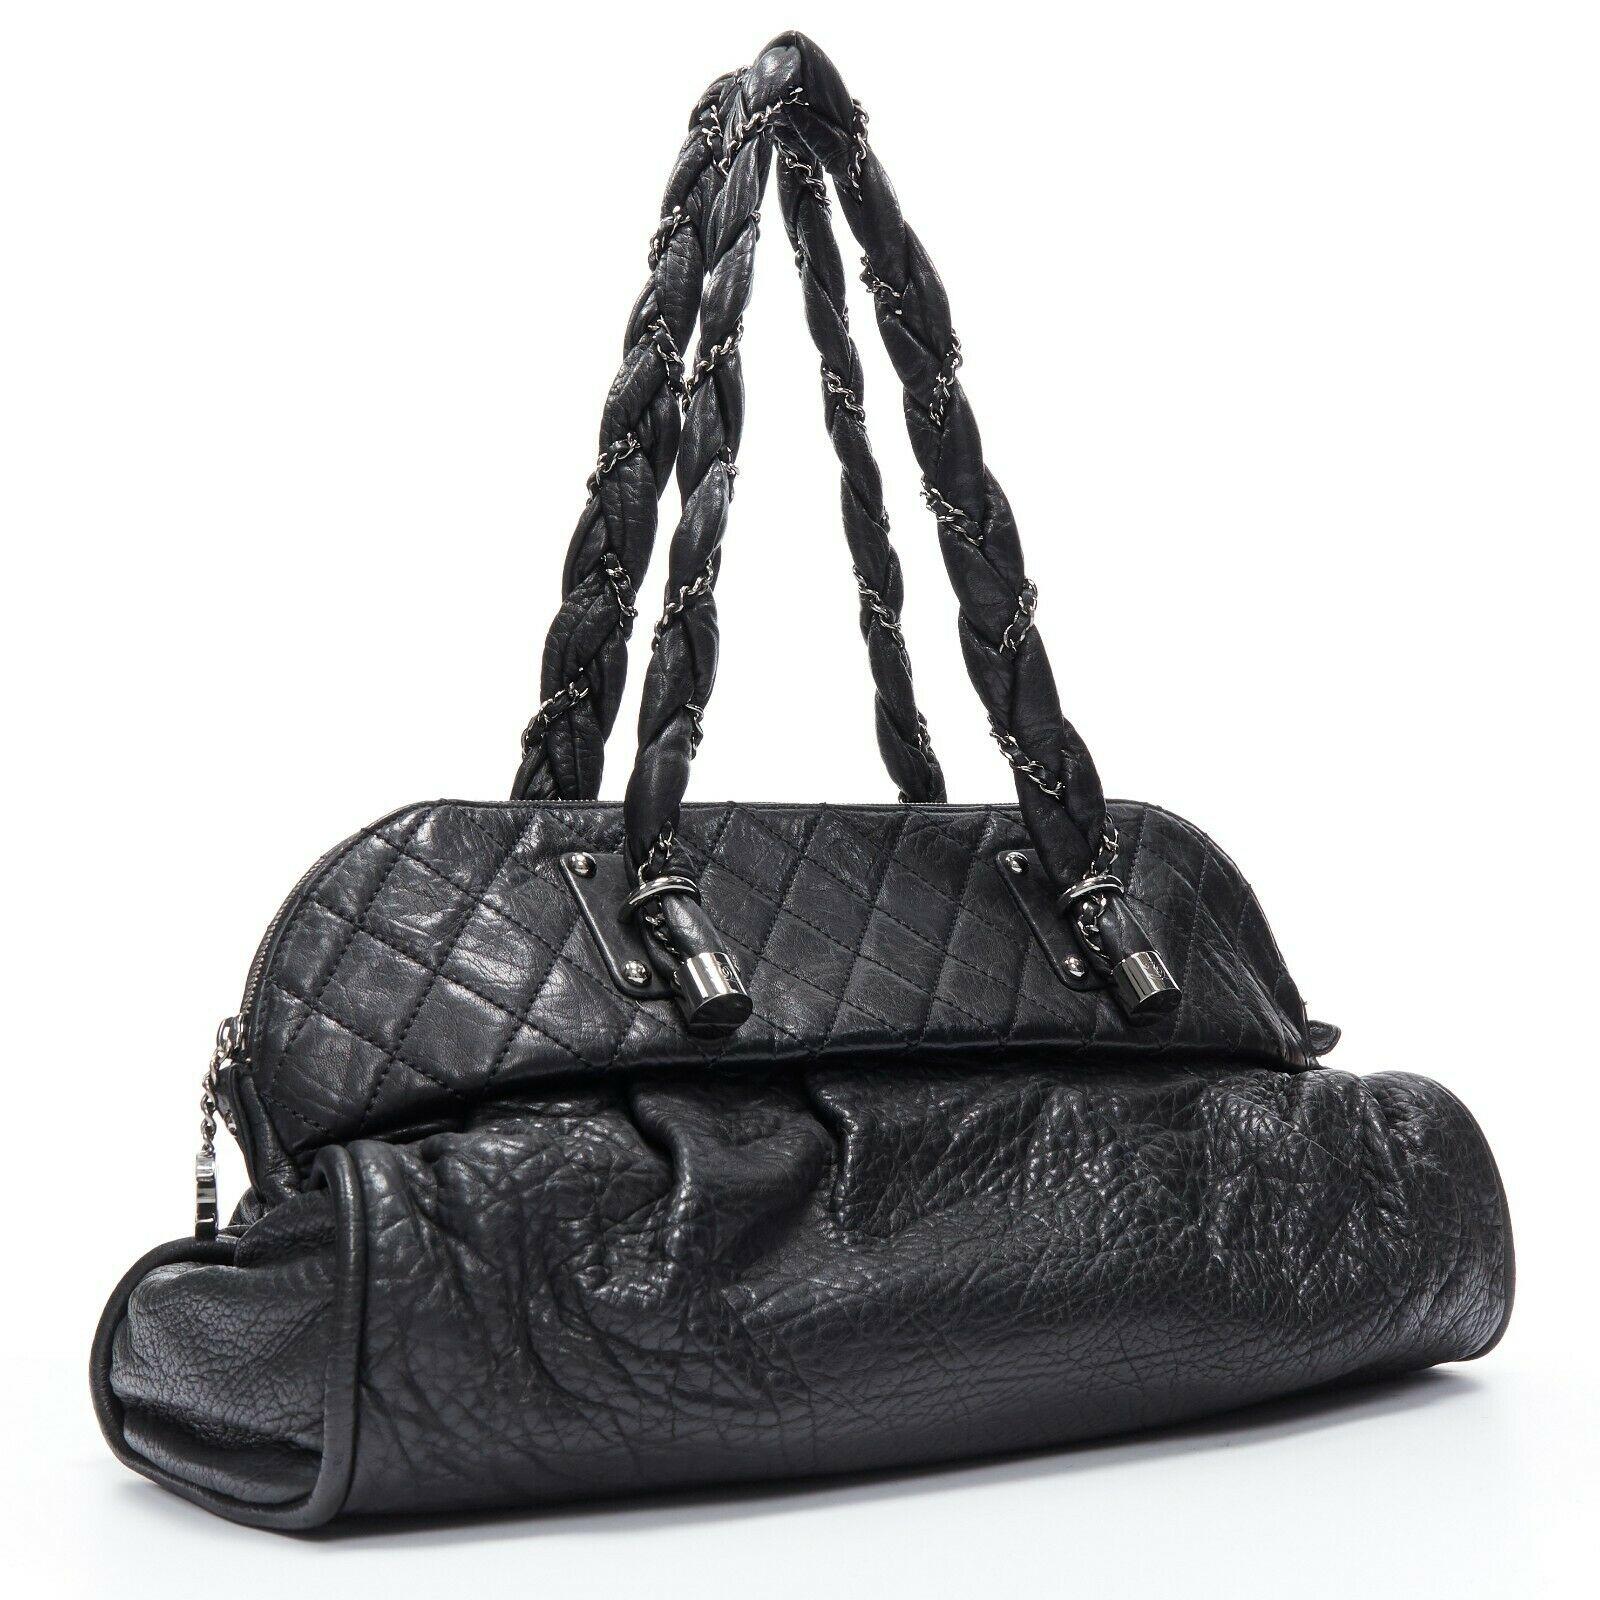 black diamond handbag bag